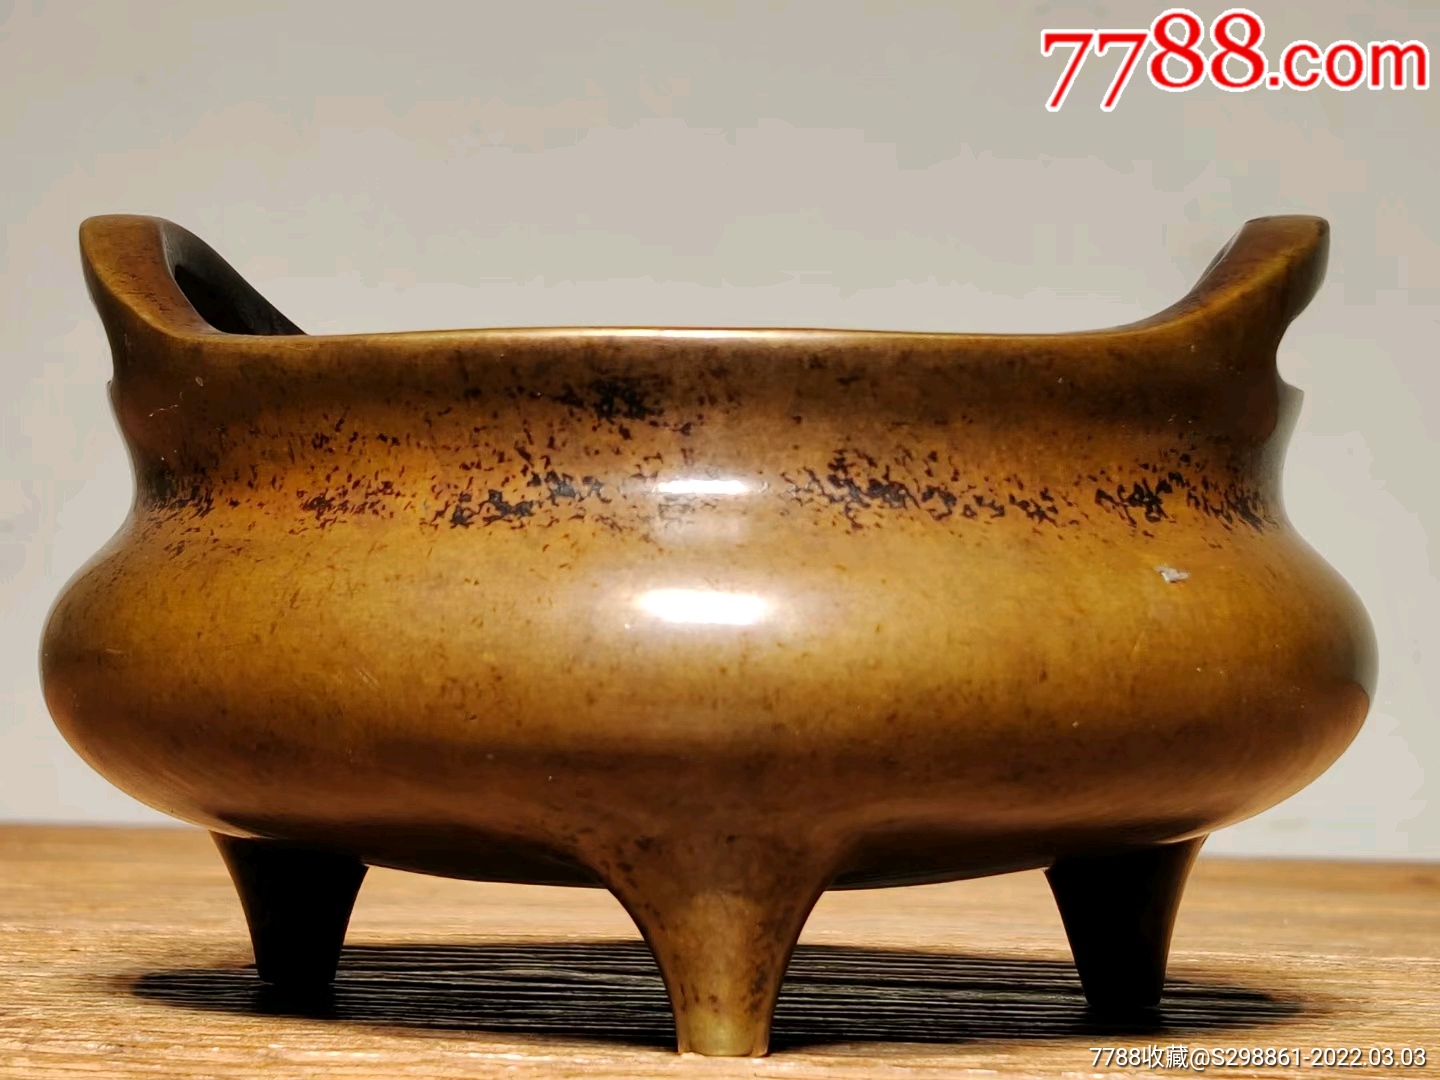 珍藏雅器大明宣德年制款双官耳铜香炉包浆圆润器型饱满全品重954克